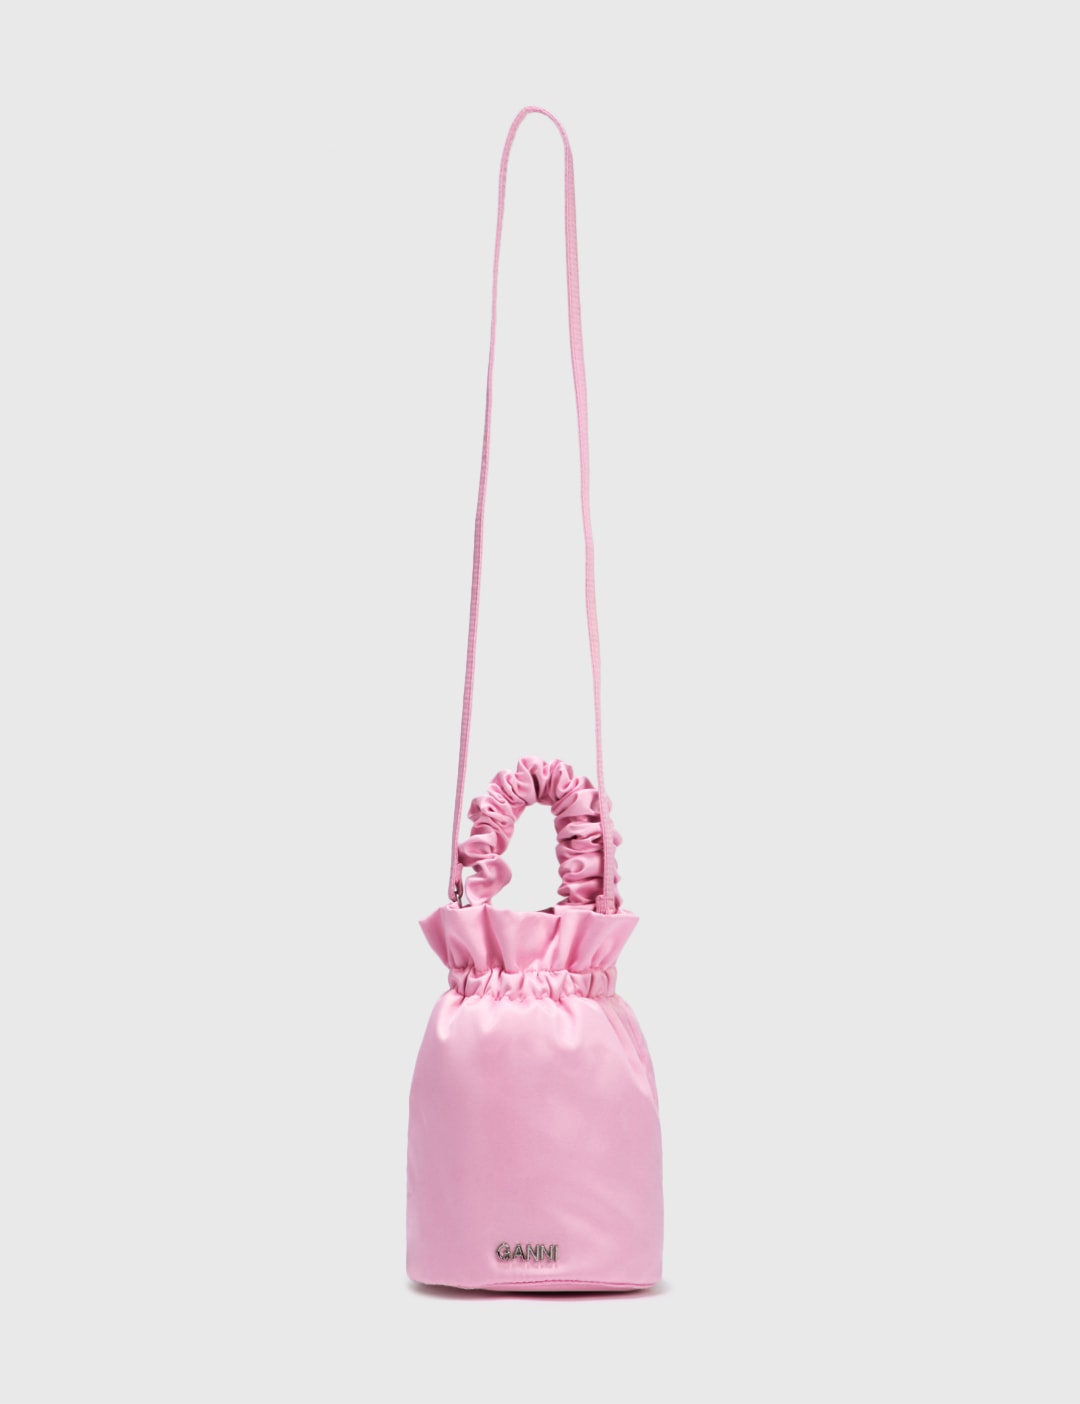 Scrunchie Bag Placeholder Image